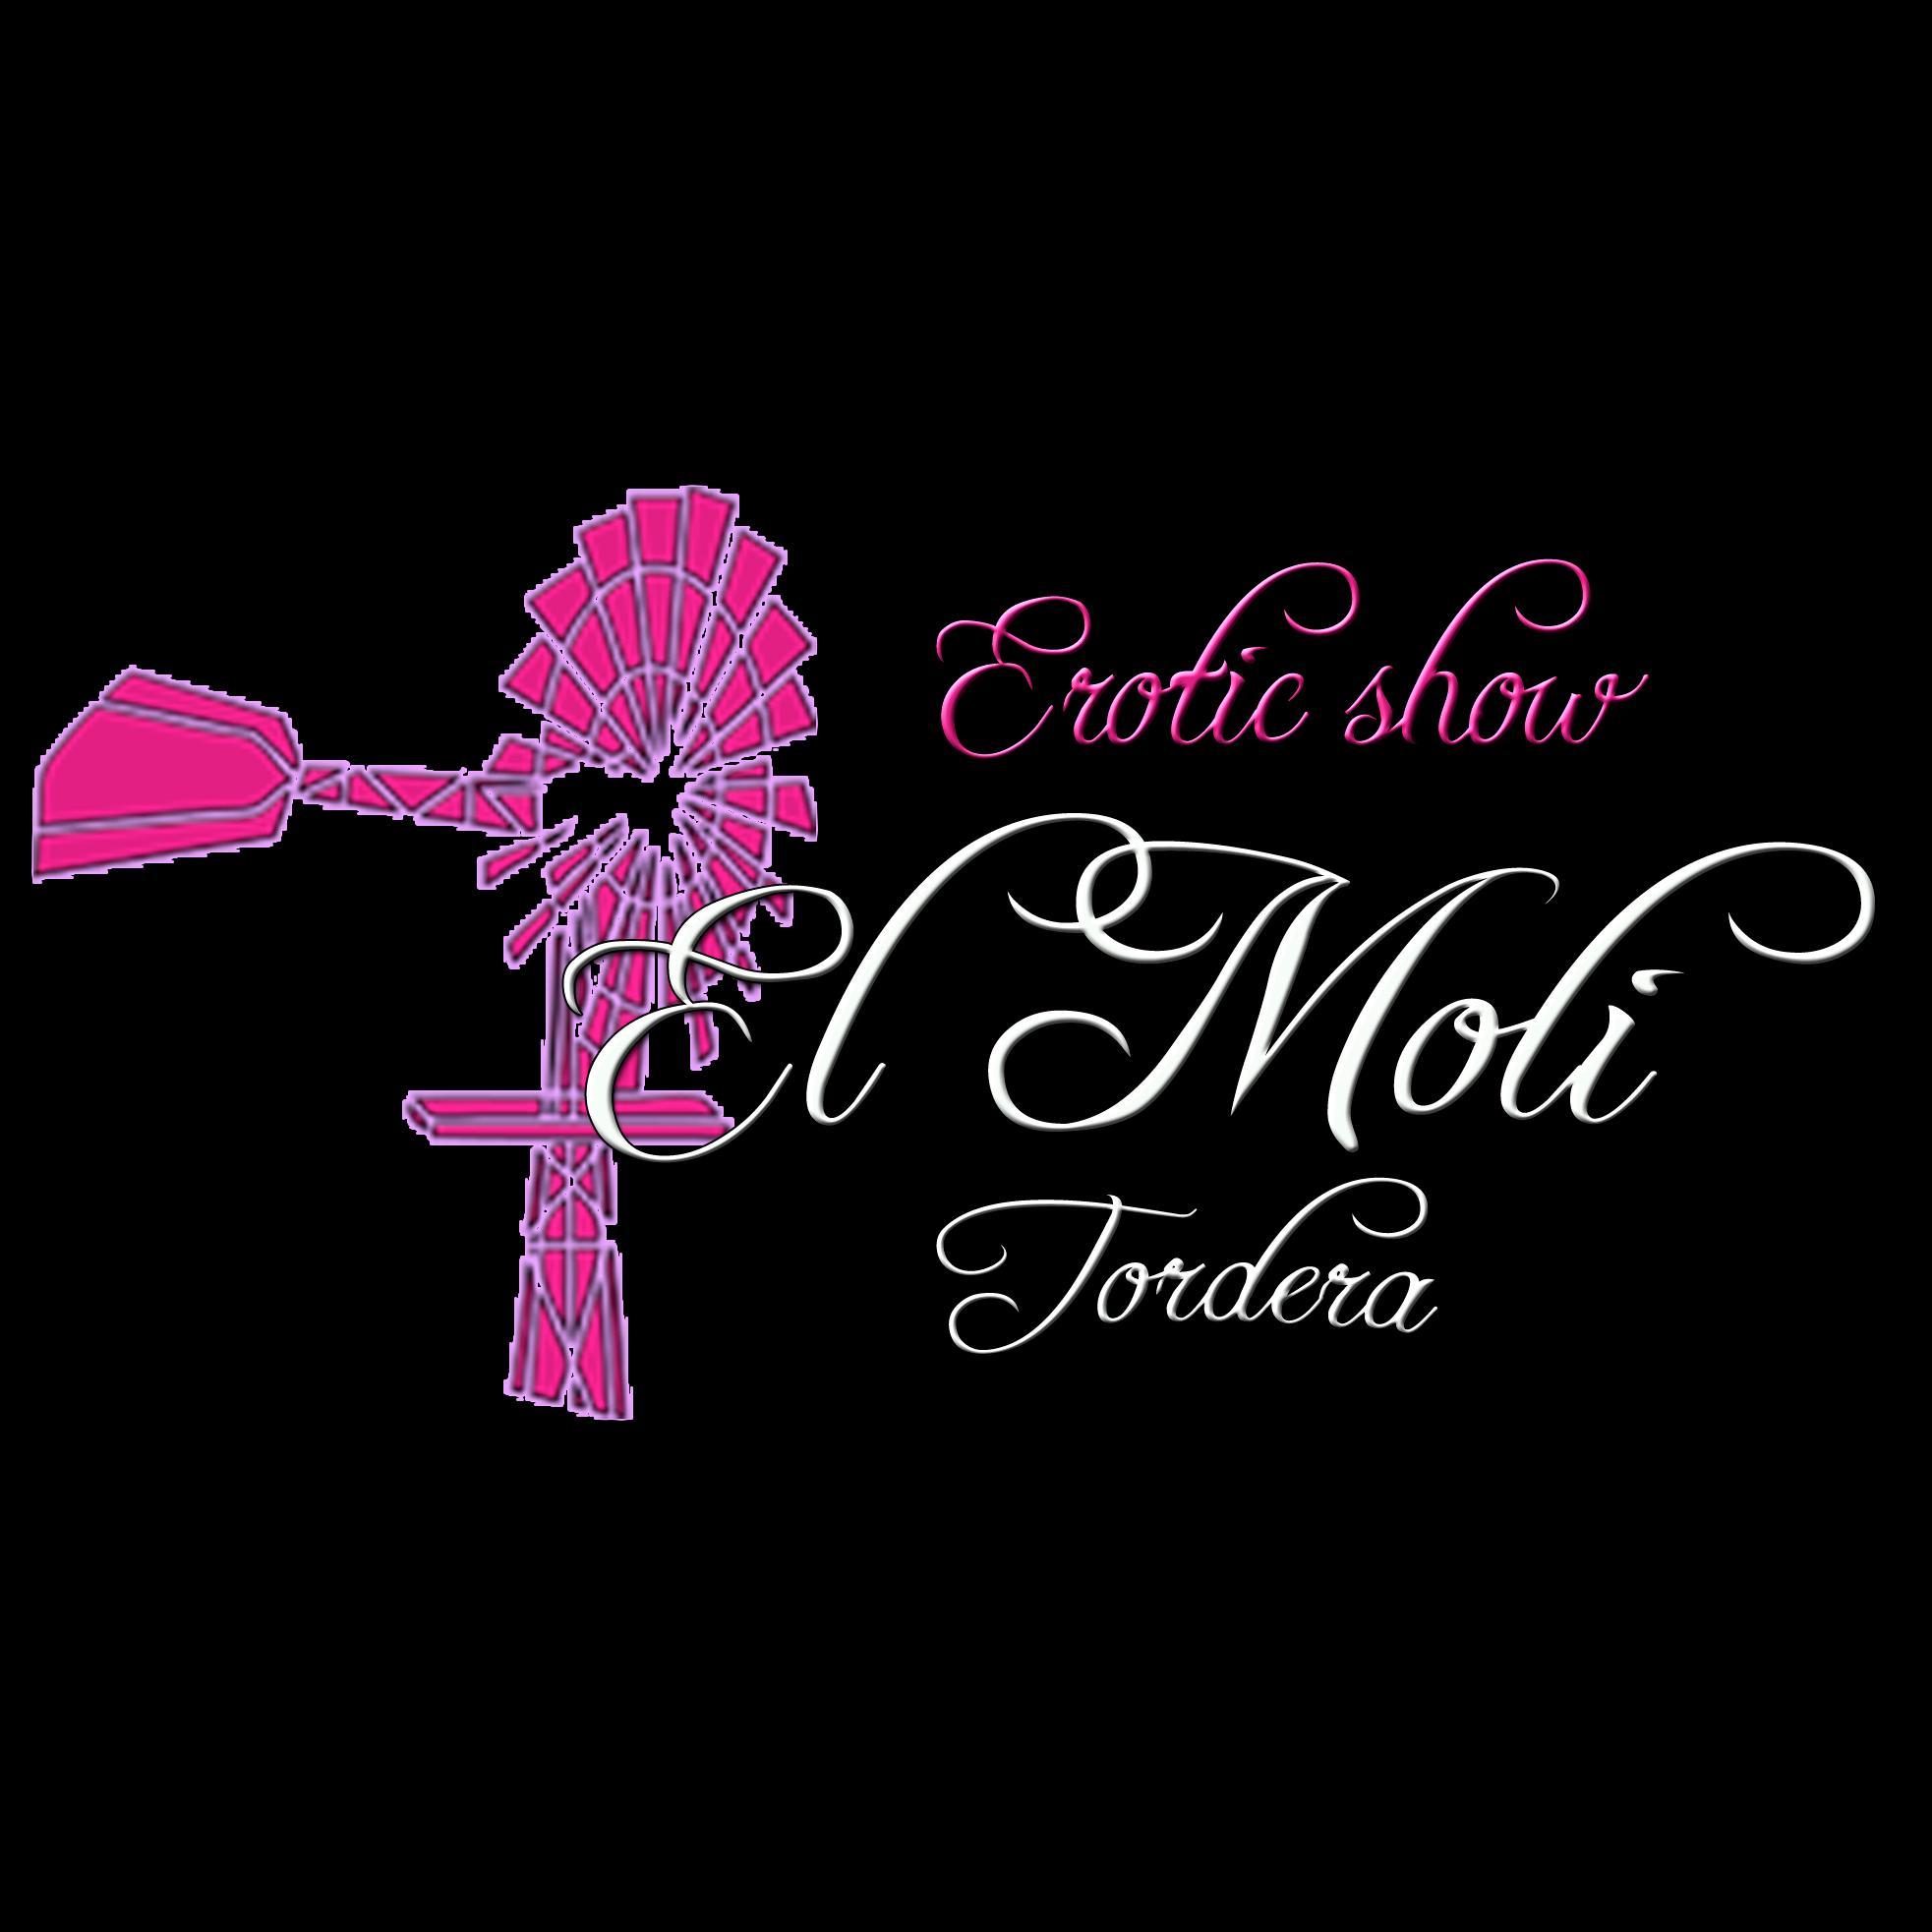 Club Moli tordera la sala de espectáculos del momento,con los mejores artistas y bailarinas del país y las xicas más bellas para ti y hacer Qué pases un día....